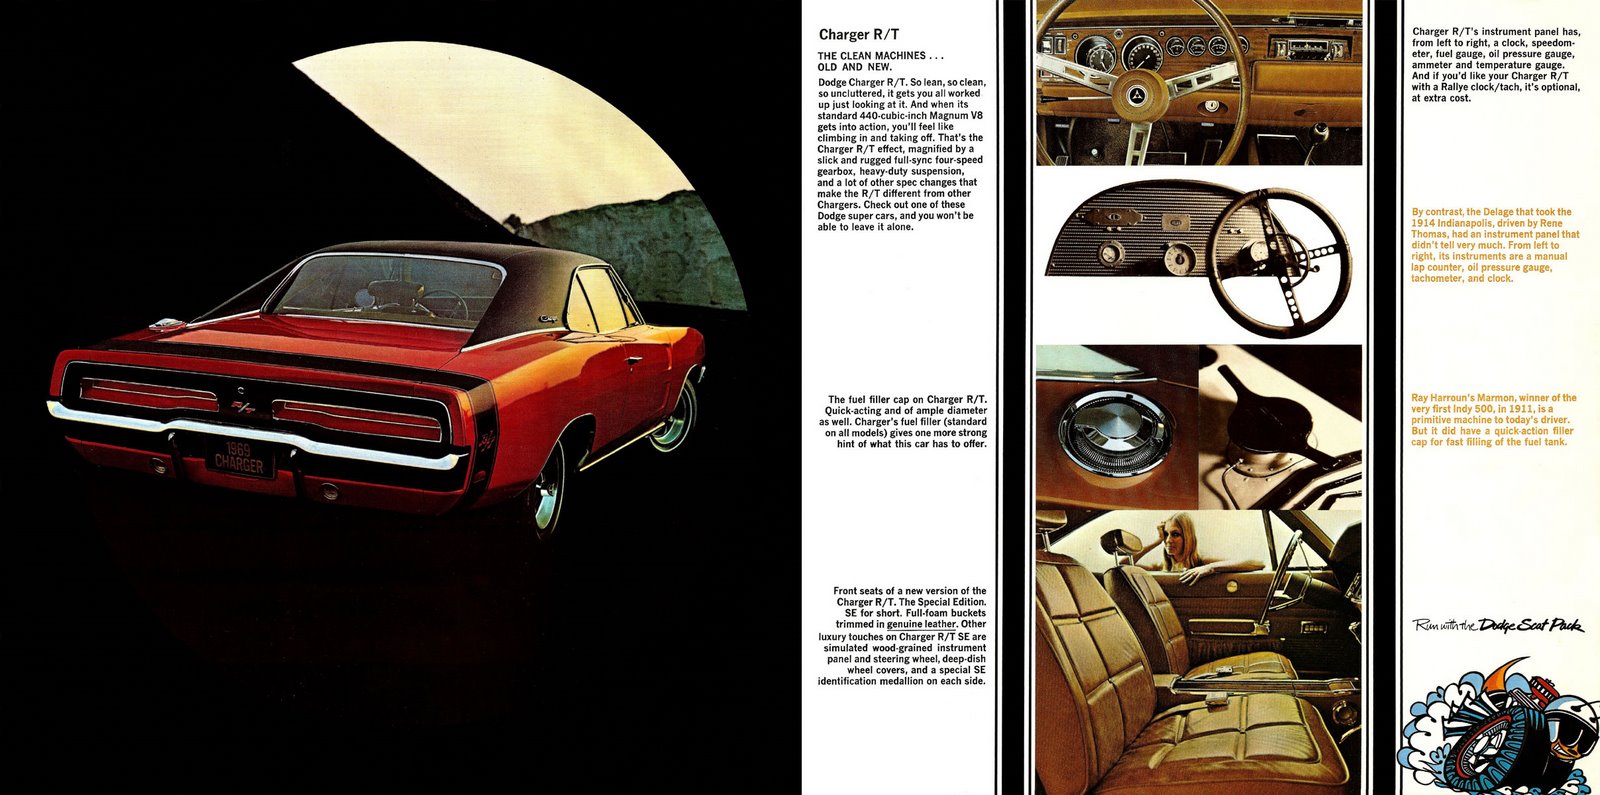 n_1969 Dodge Super Cars-02-03.jpg